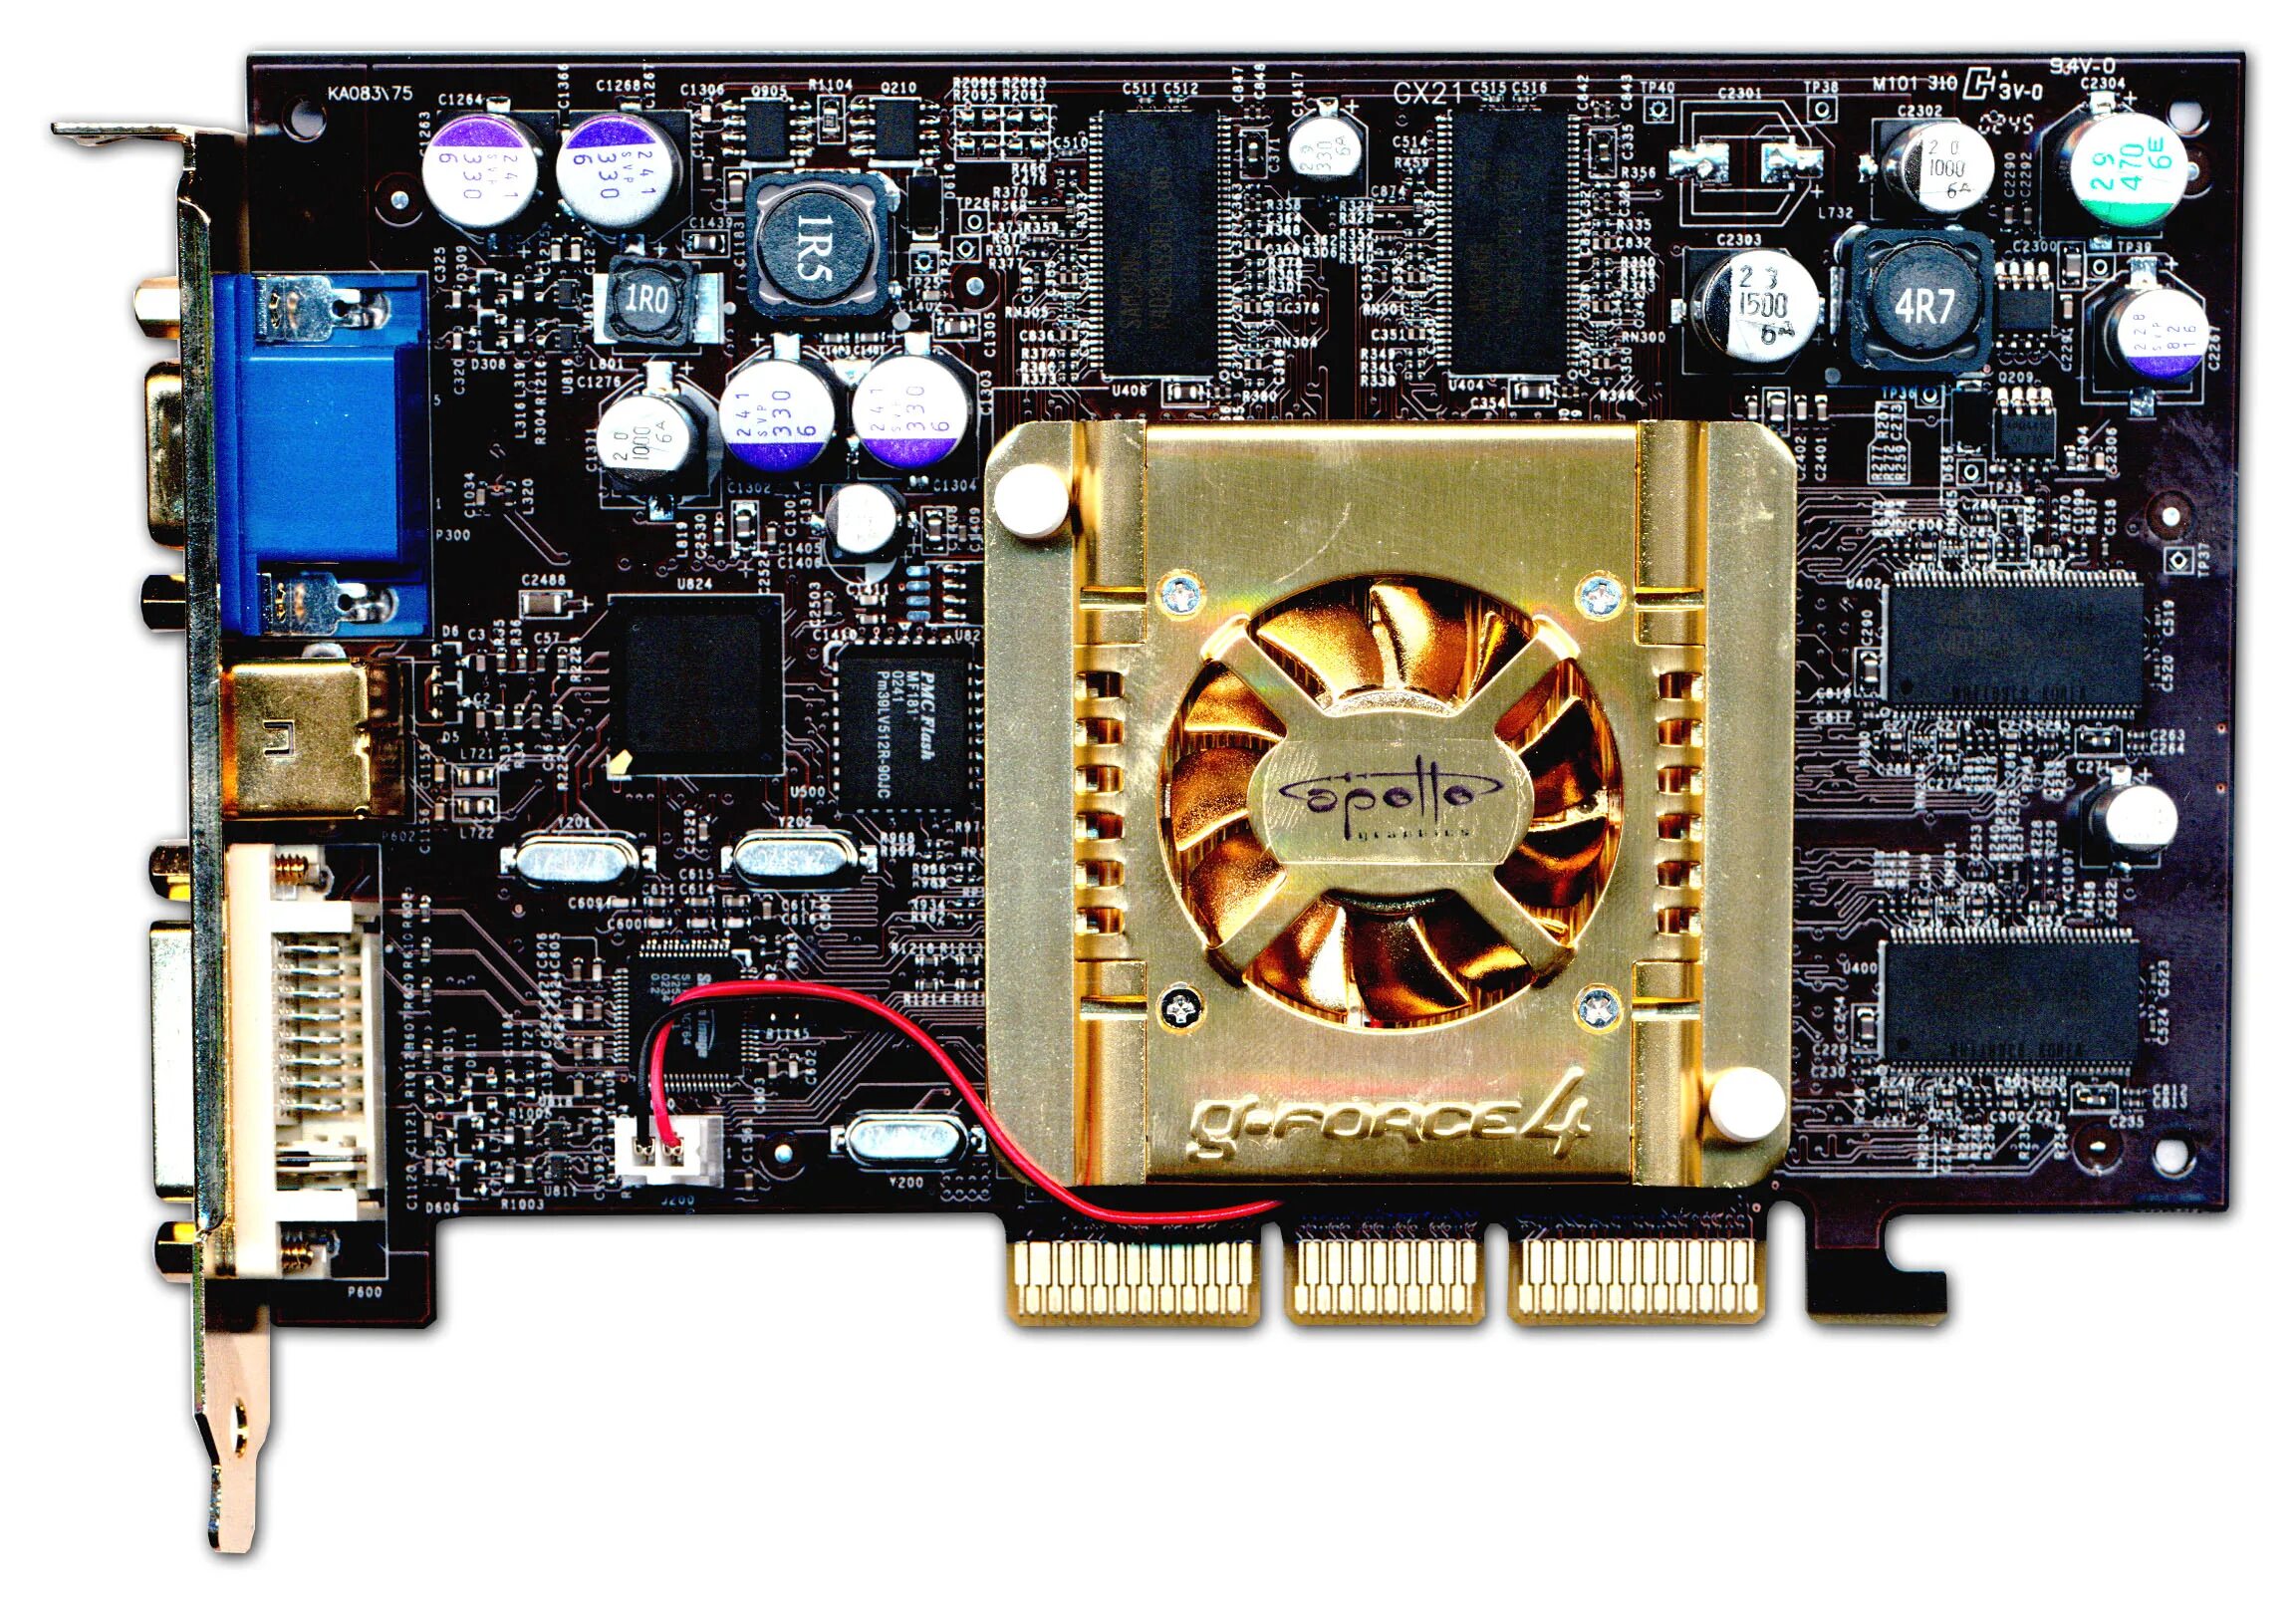 Nvidia 4g. Geforce4 ti 4200-8x. GEFORCE 4 ti 4200. Gf4 4200ti,. GEFORCE 4 ti 4200 AGP 8x.